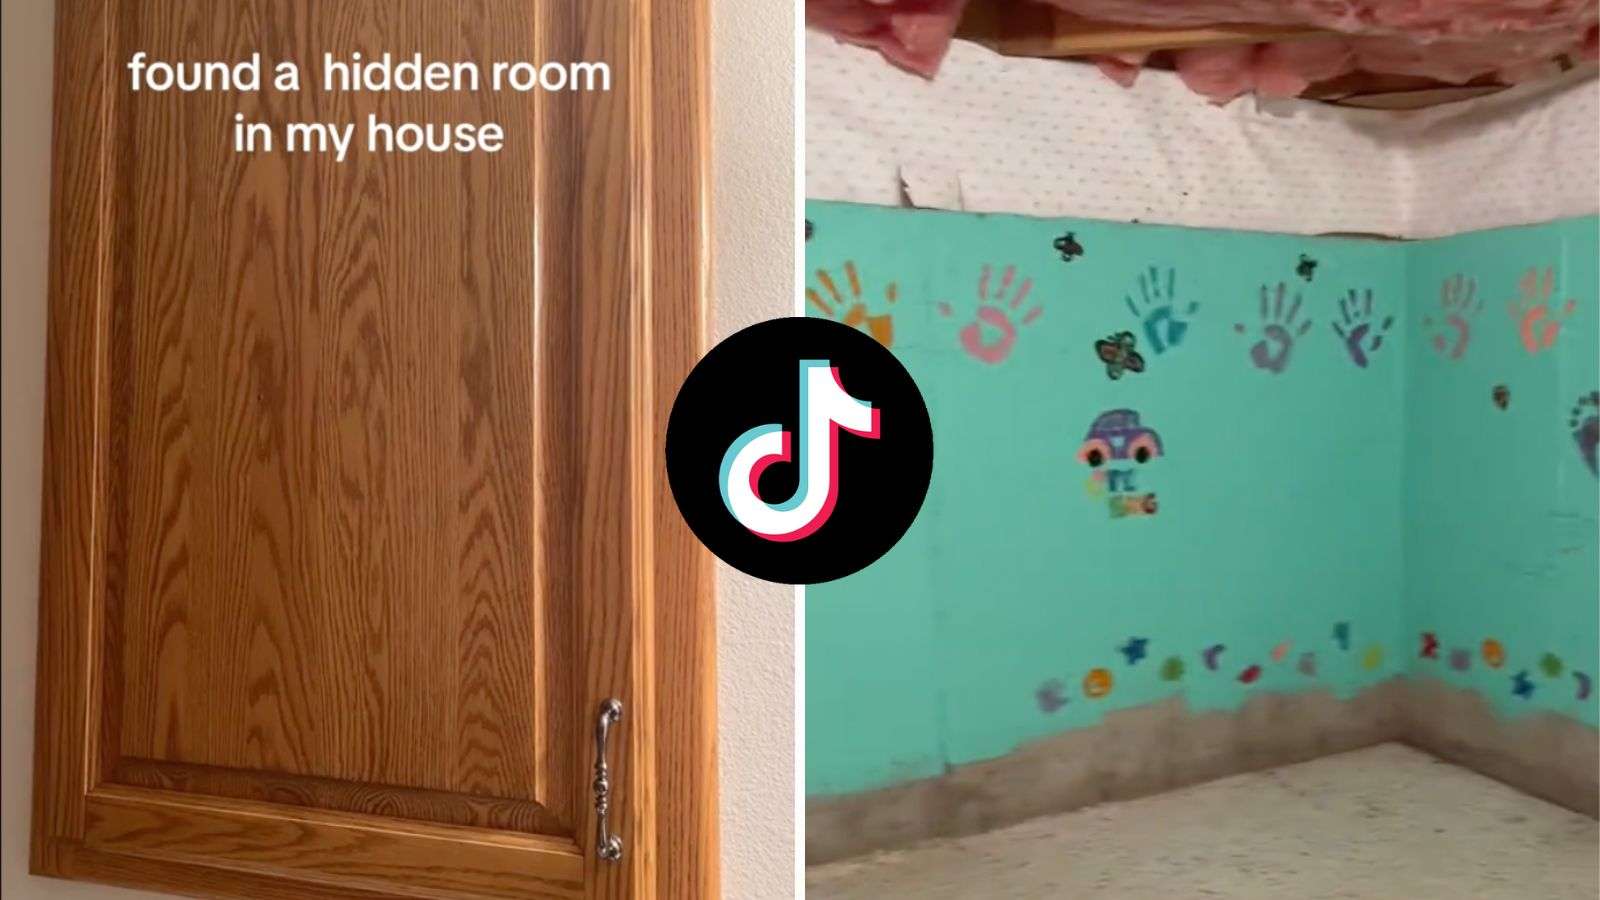 Woman finds “creepy” hidden room behind door in her basement bathroom